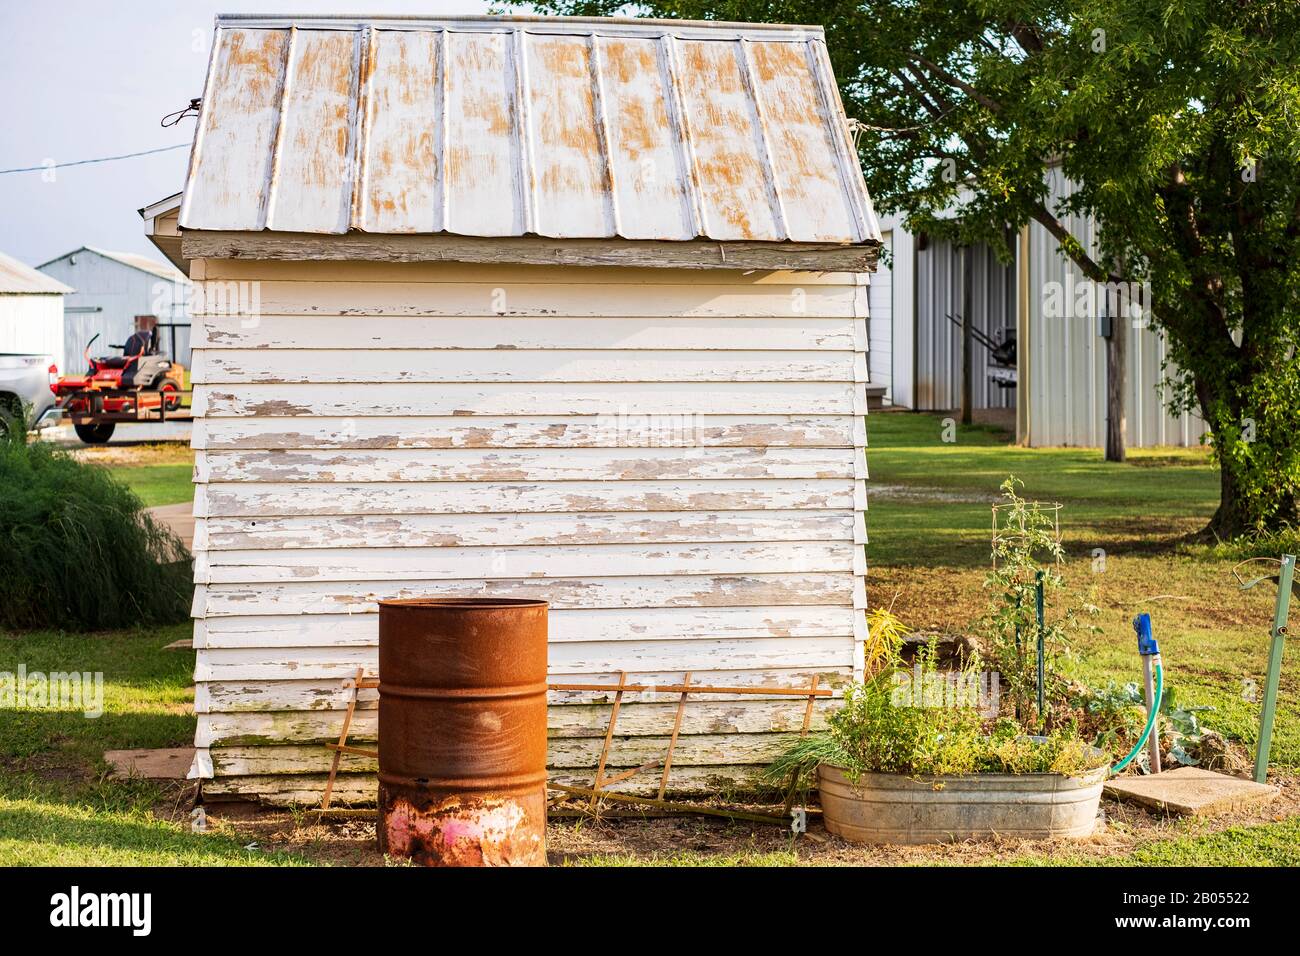 Ein Oklahoma Hof, der einen abblätternden Holzvorbau mit einem rostenden Blechdach und anderen Nebengebäuden zeigt. Oklahoma, USA. Stockfoto